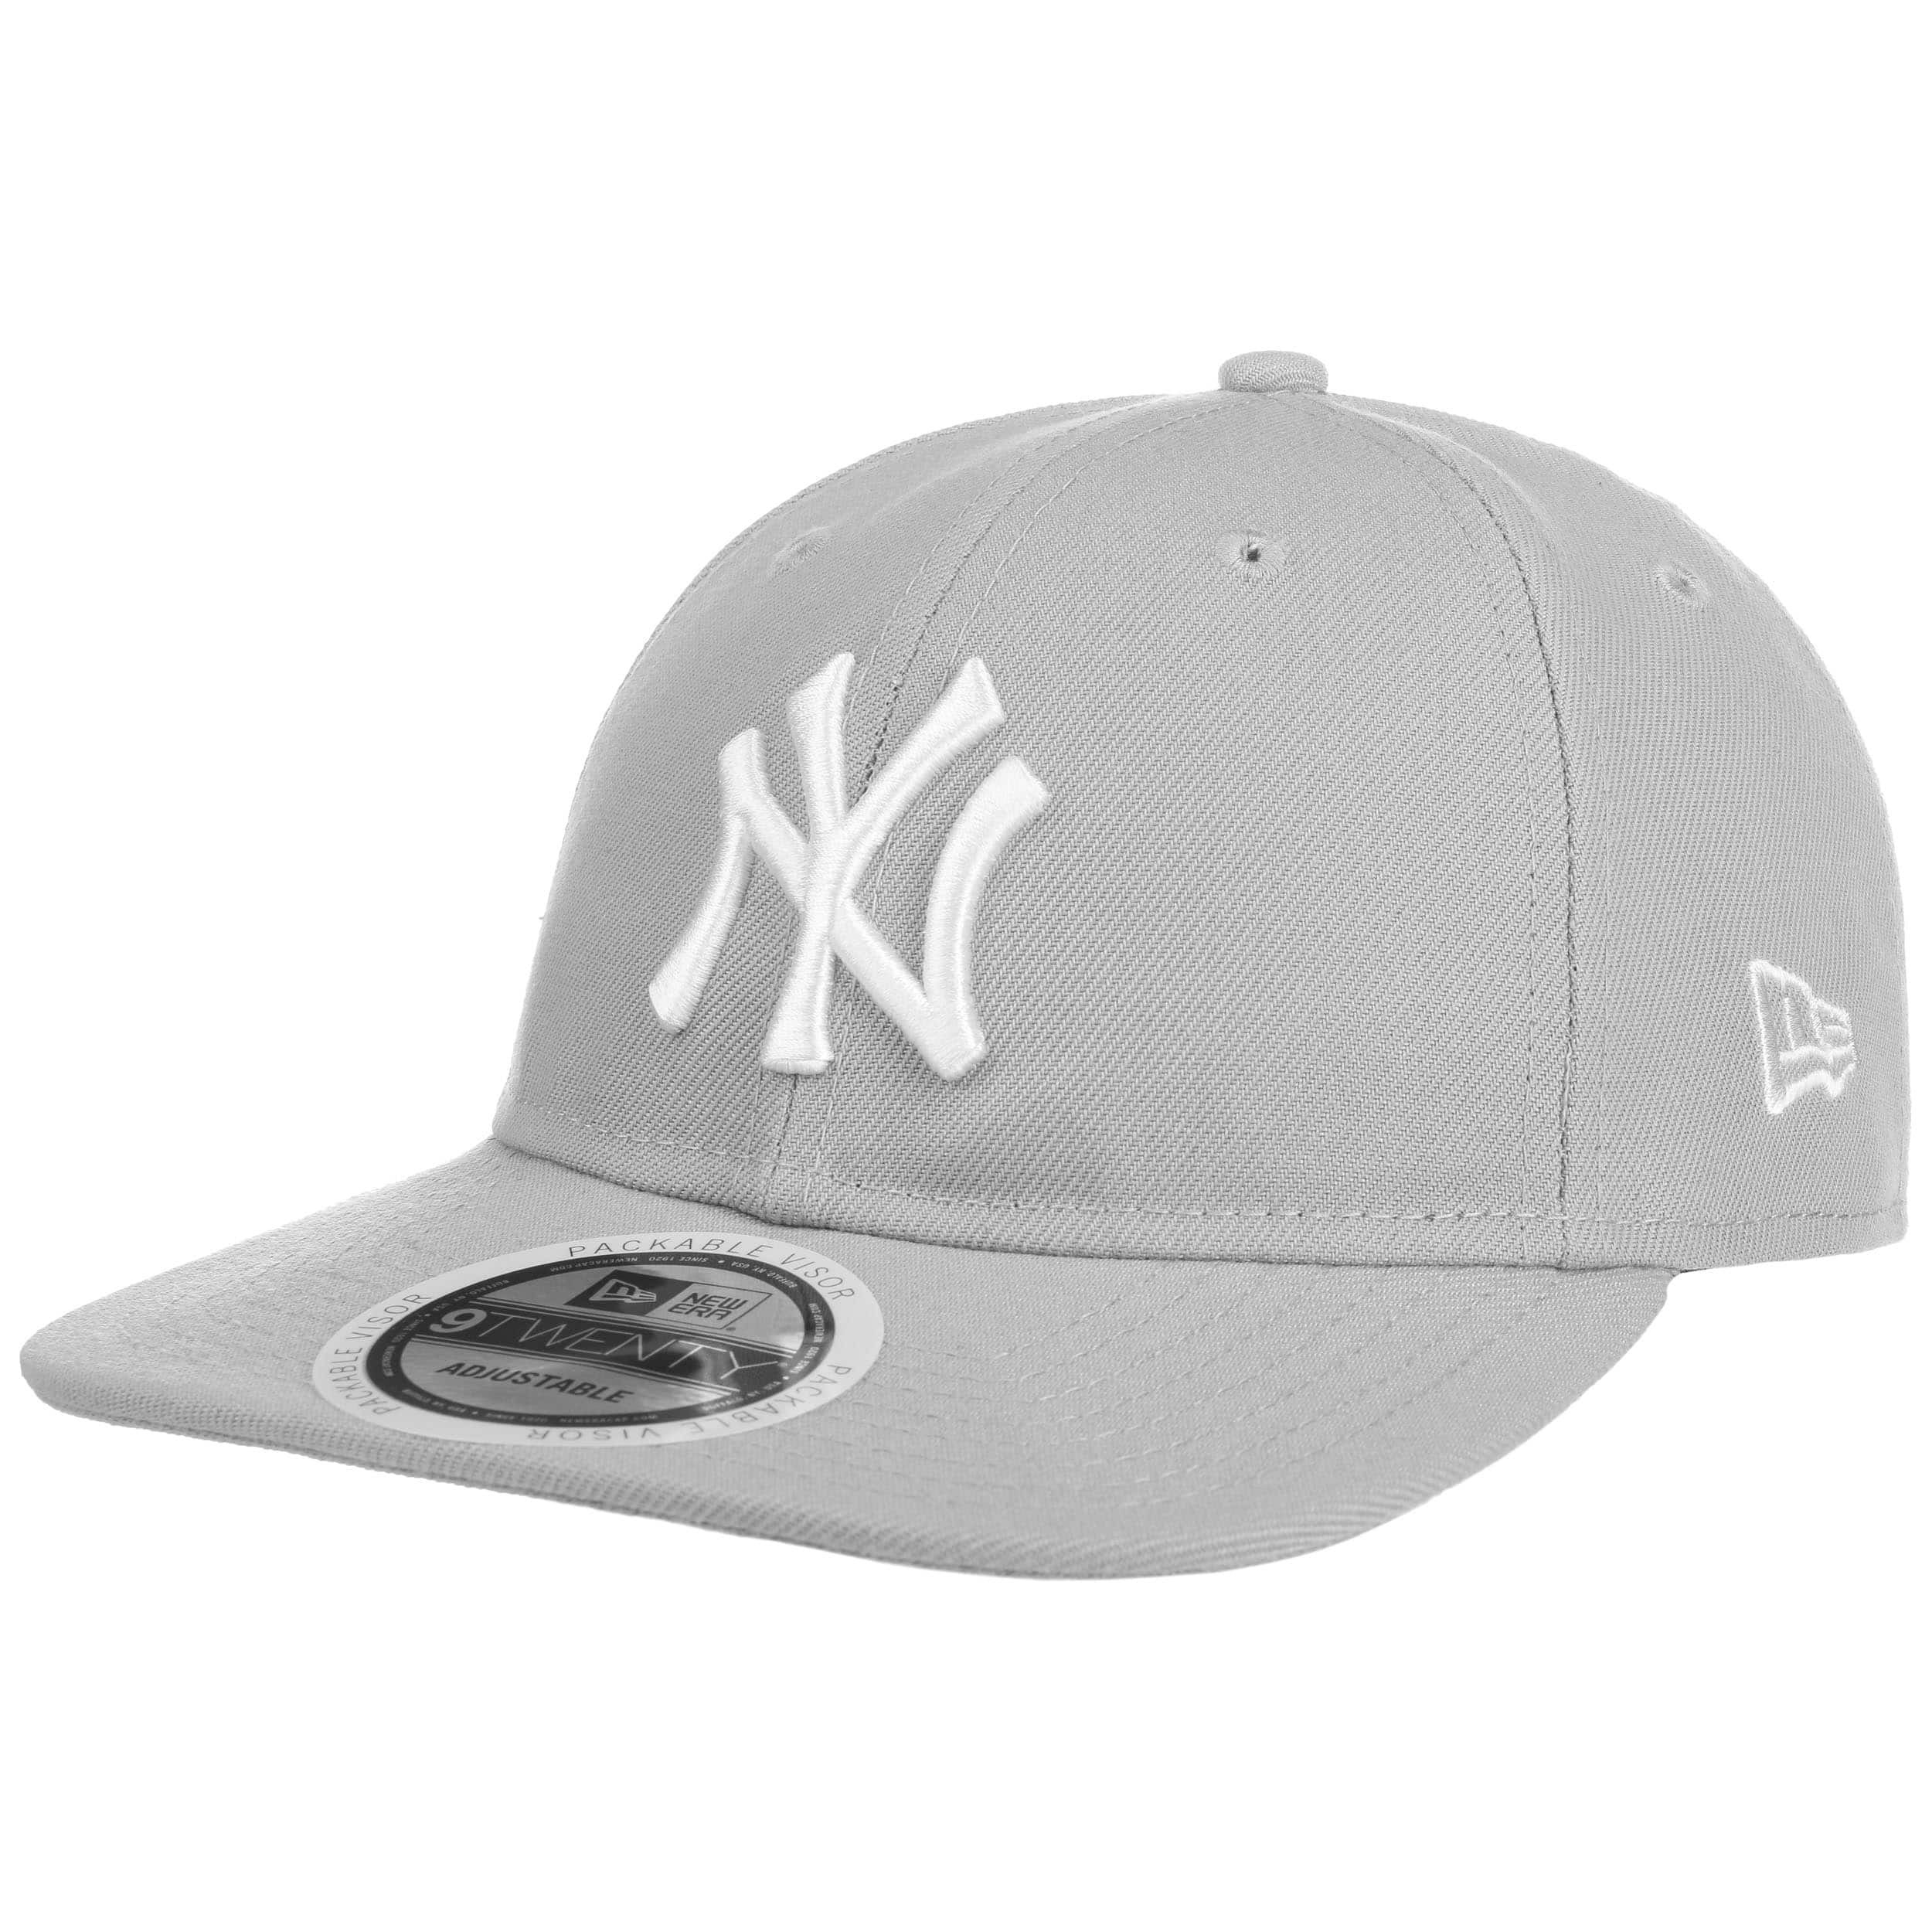 9Twenty Team - Cap Era 28,95 € Packable Yankees New by